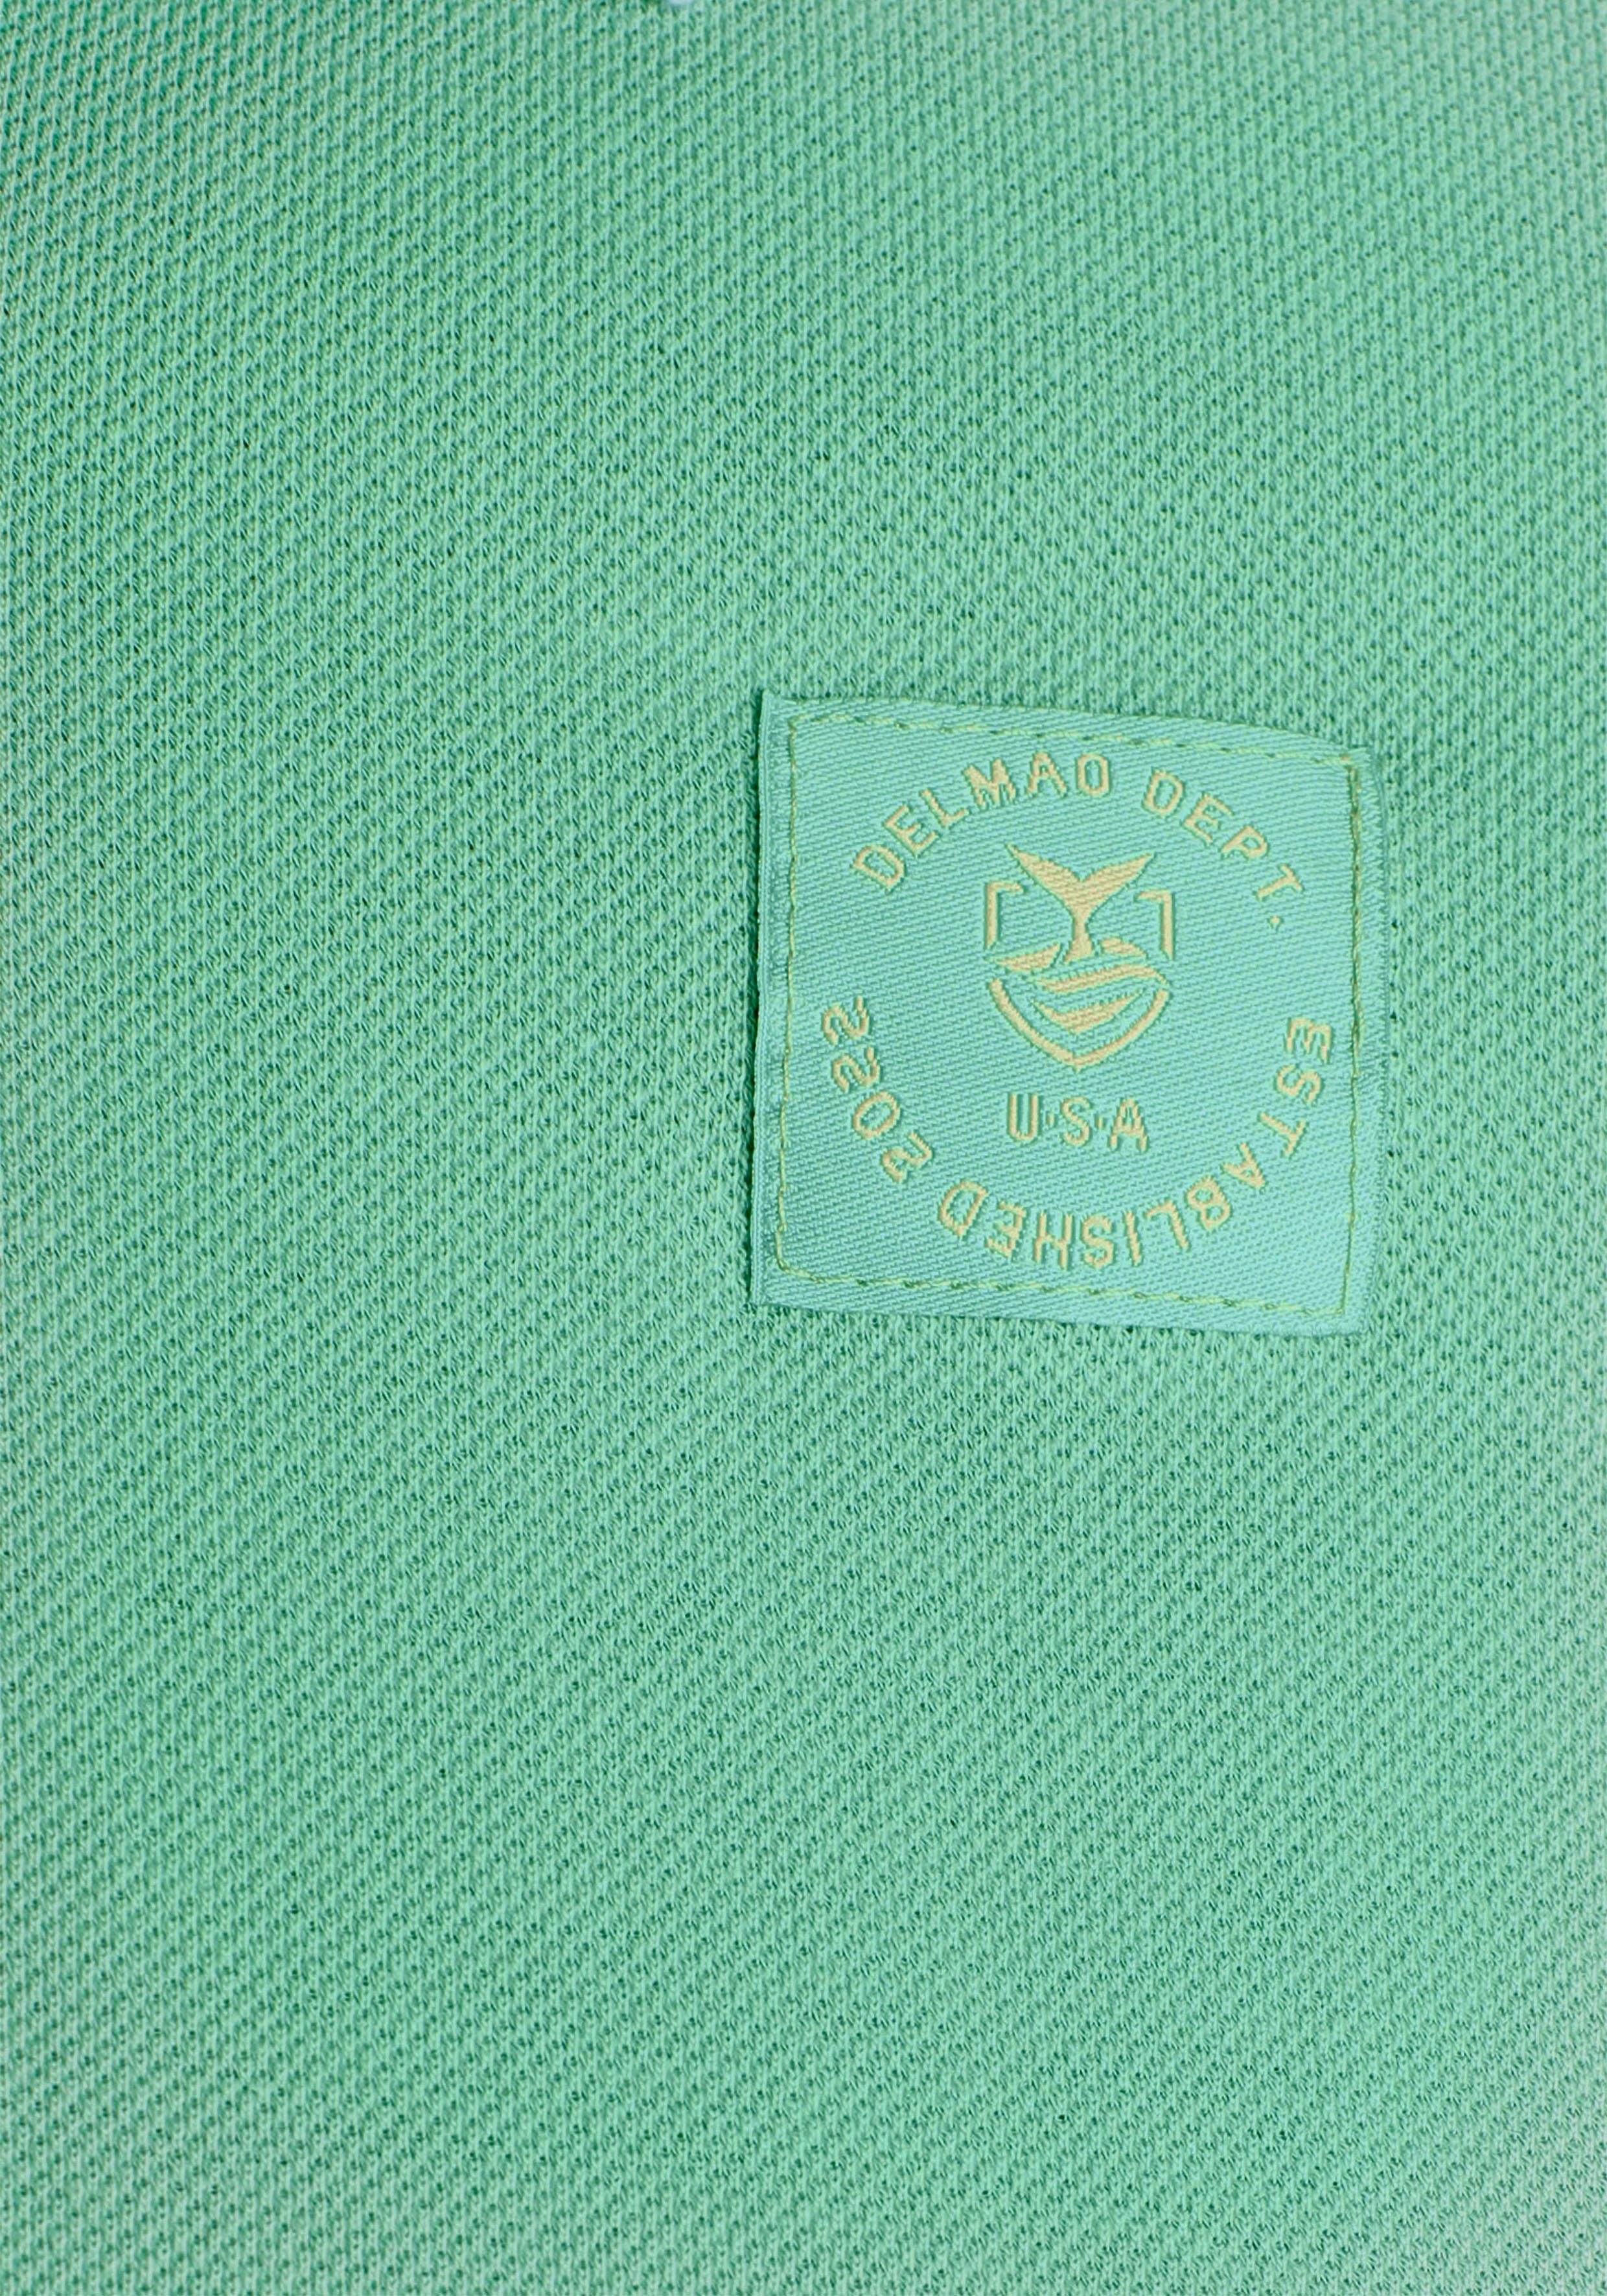 Brustlabel mit DELMAO - modischem MARKE! grün NEUE Poloshirt